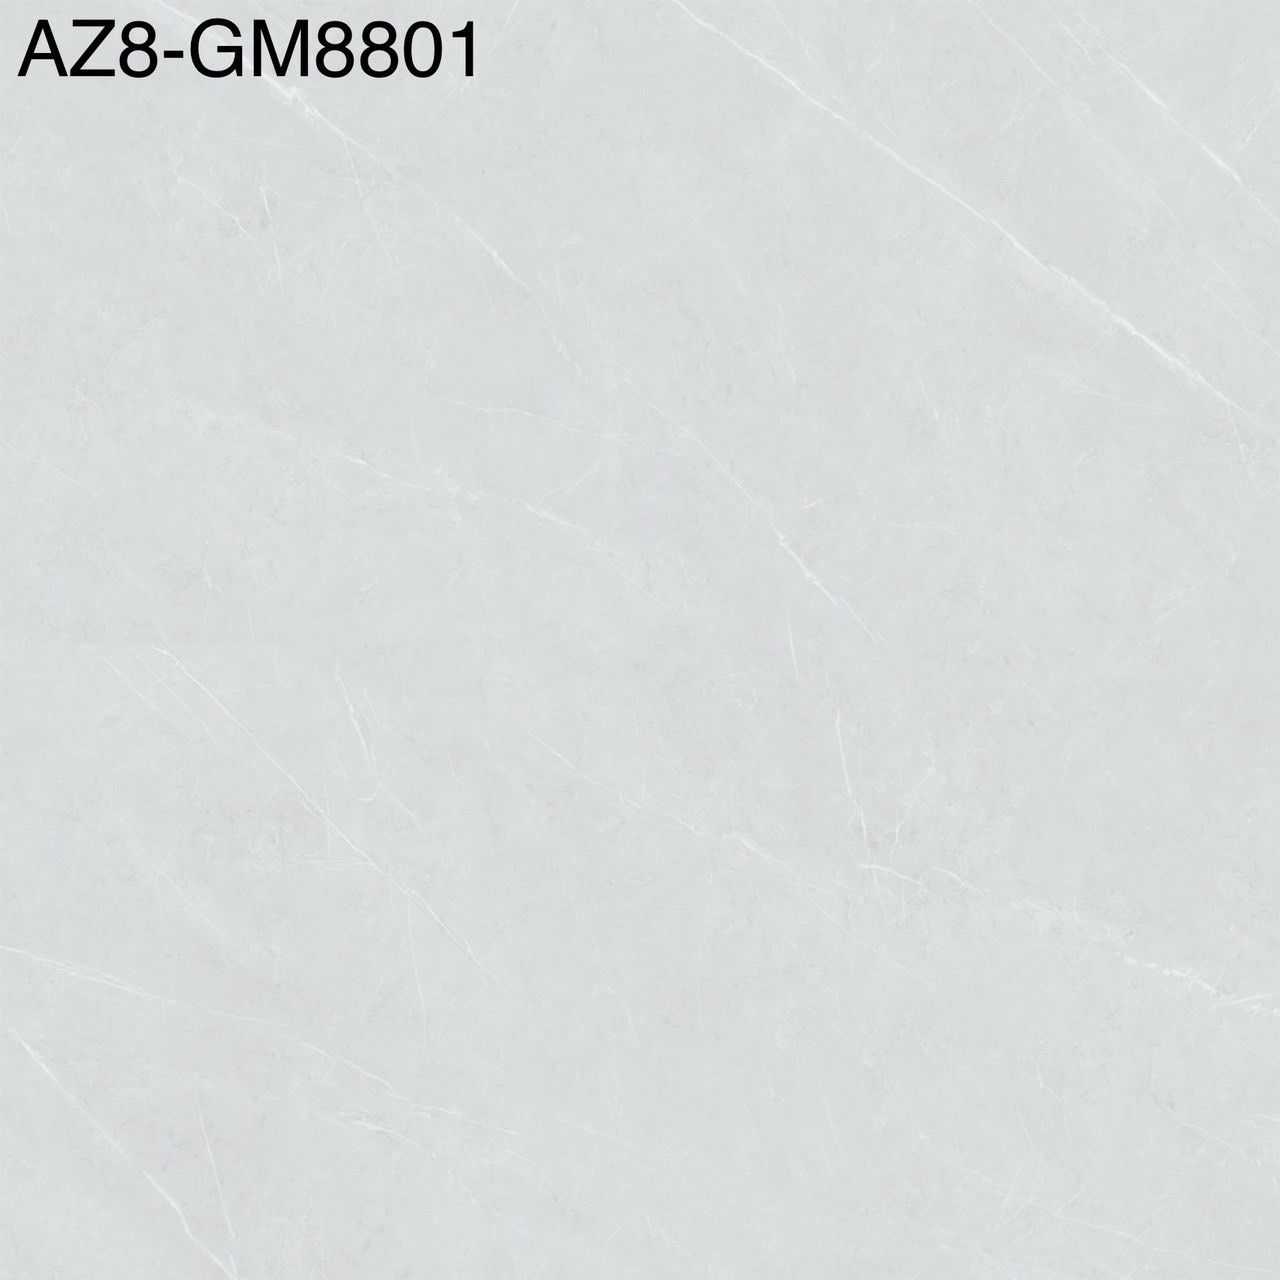 AZ8-GM8801